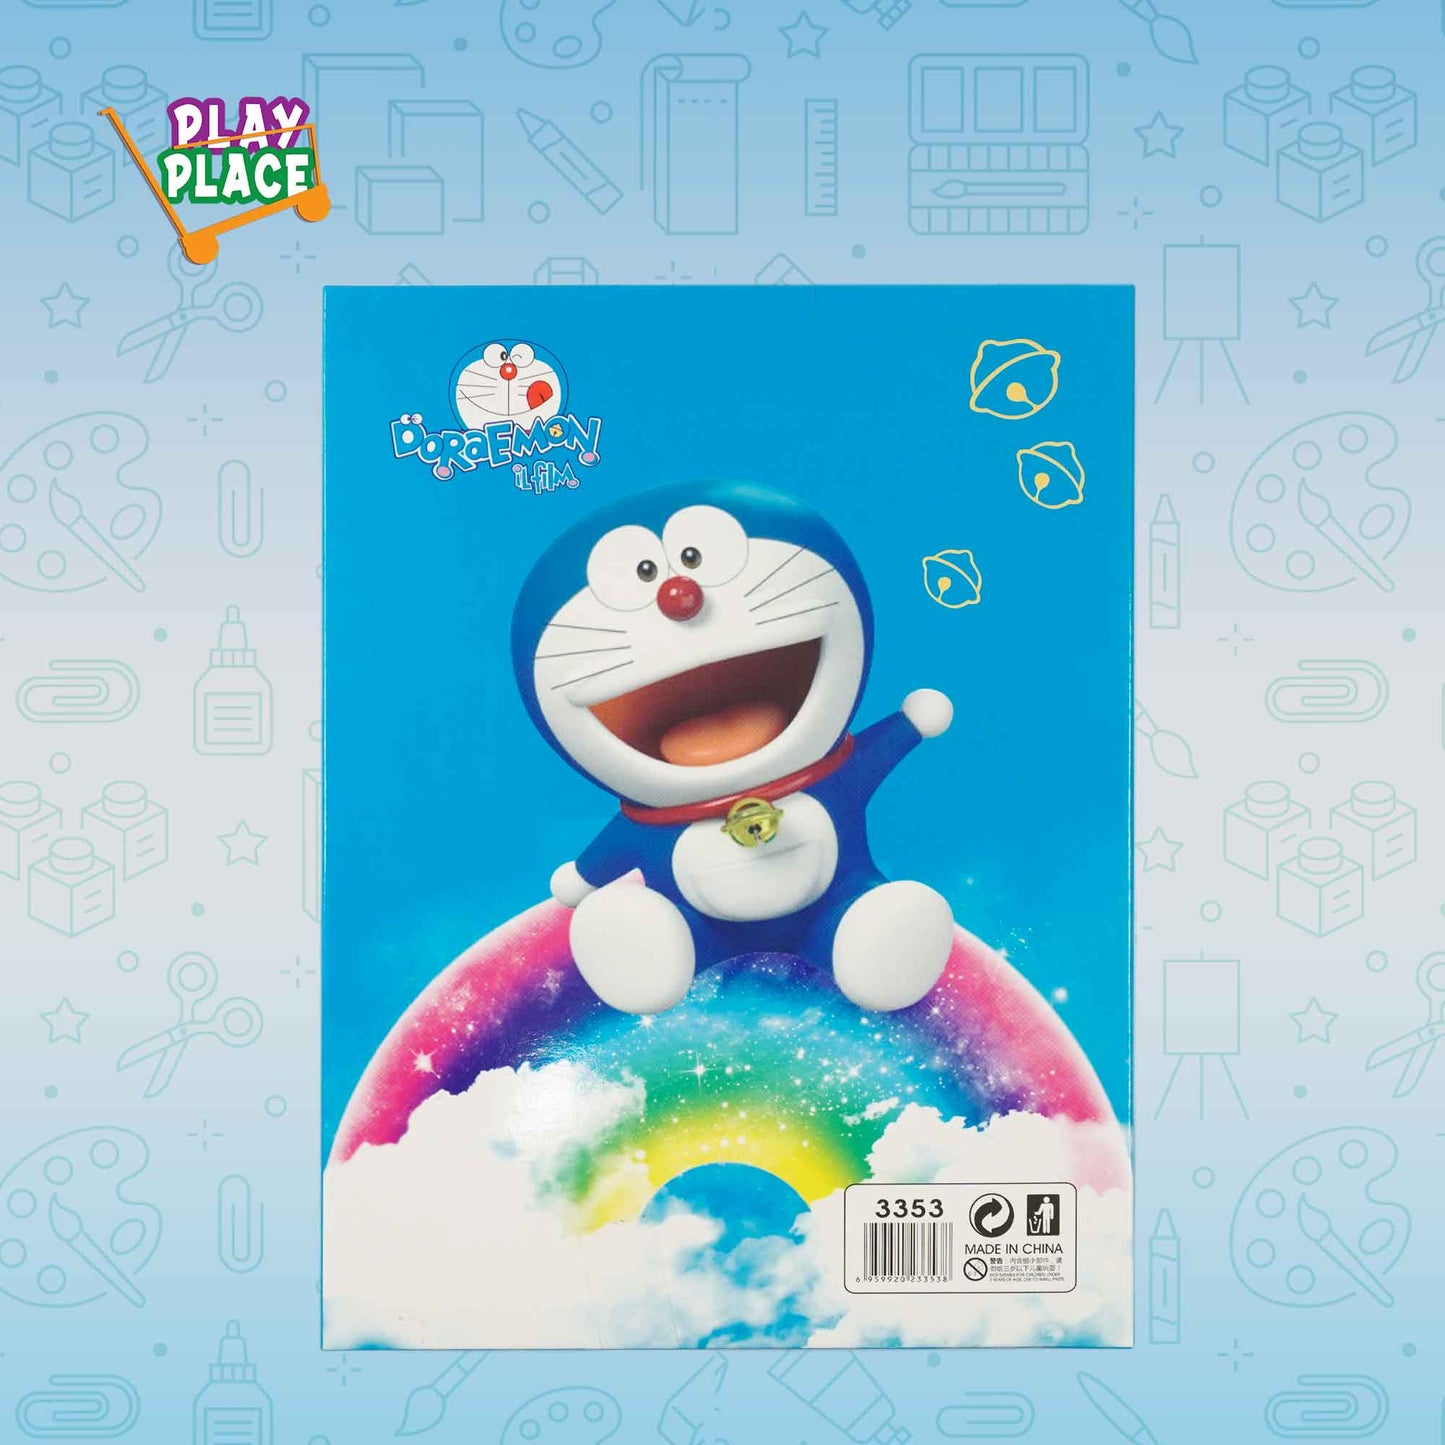 Doraemon Theme Gifts/Stationery Set